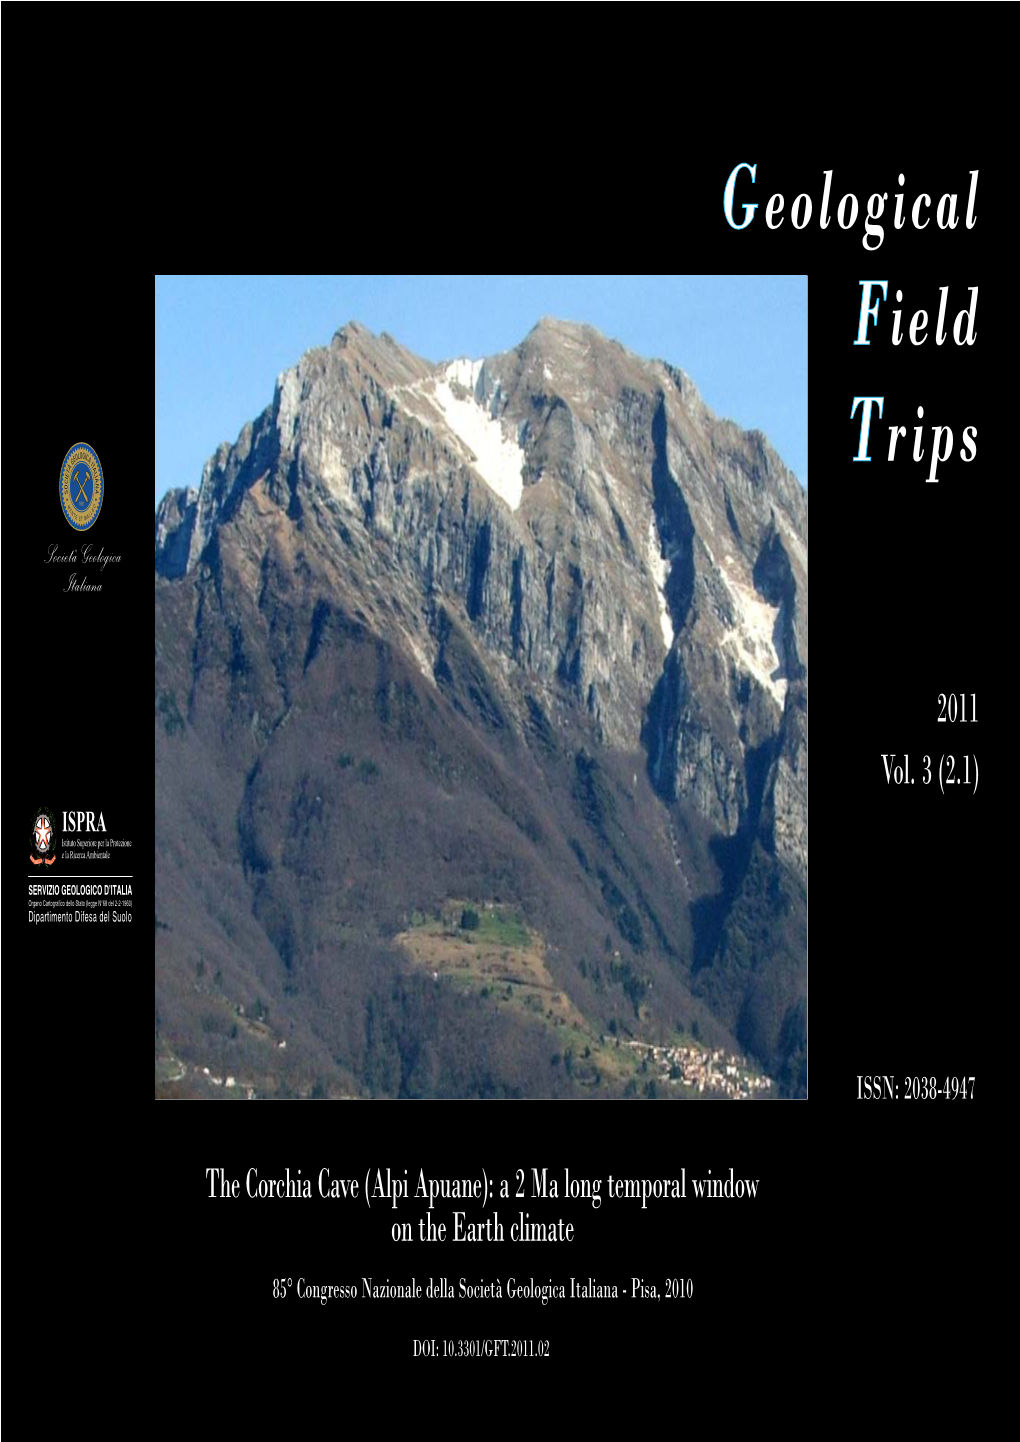 The Corchia Cave (Alpi Apuane): a 2 Ma Long Temporal Window on the Earth Climate 85° Congresso Nazionale Della Società Geologica Italiana - Pisa, 2010